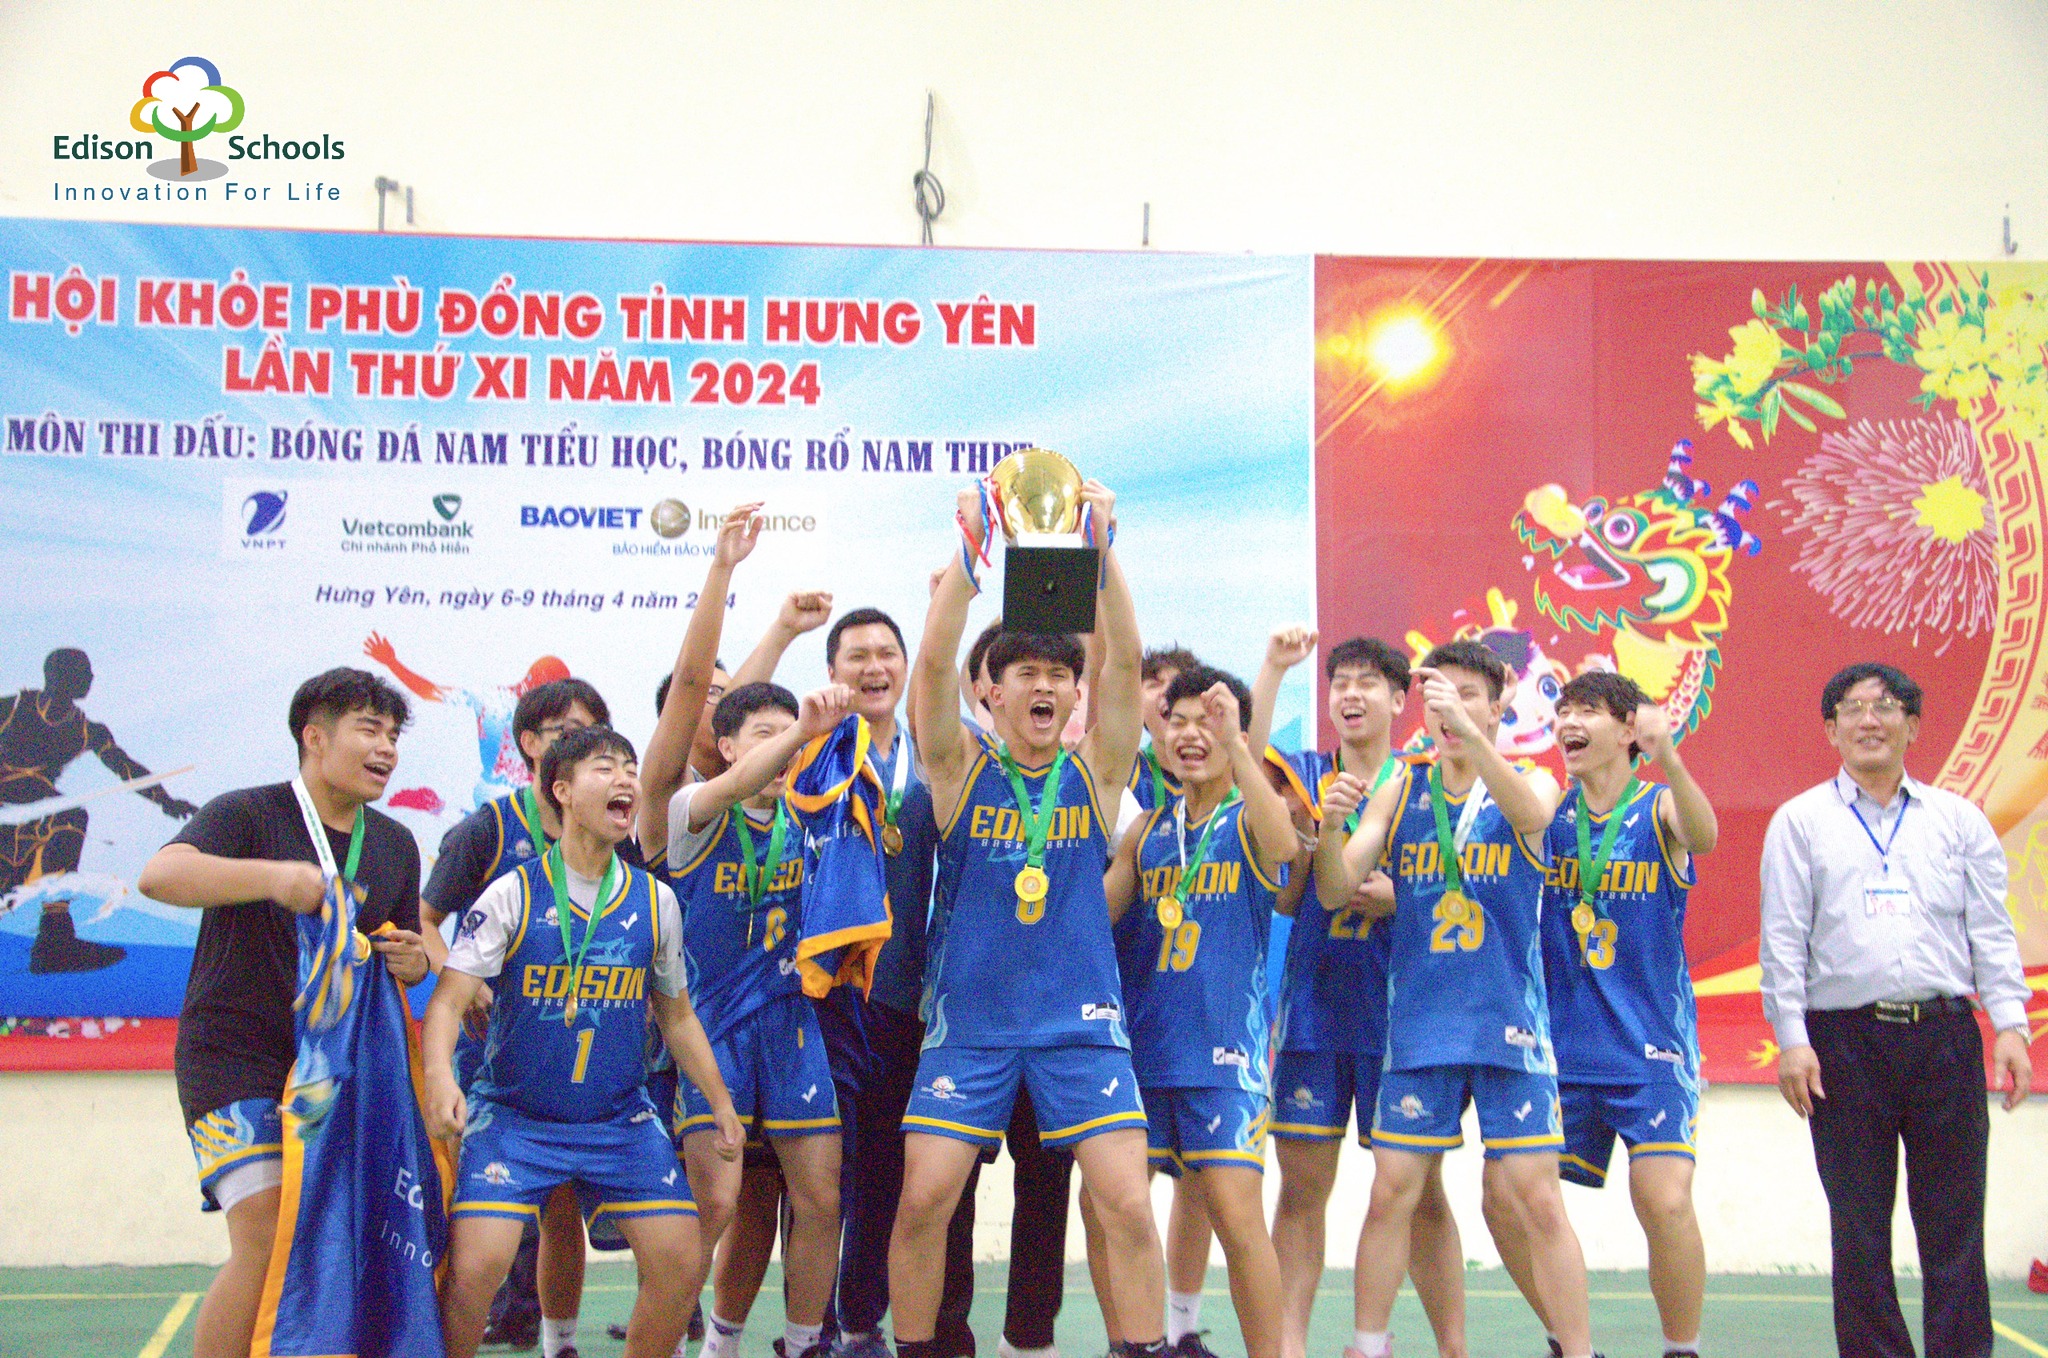 Đội thể thao Edison Schools đạt thành tích xuất sắc tại Hội khỏe Phù Đổng tỉnh Hưng Yên